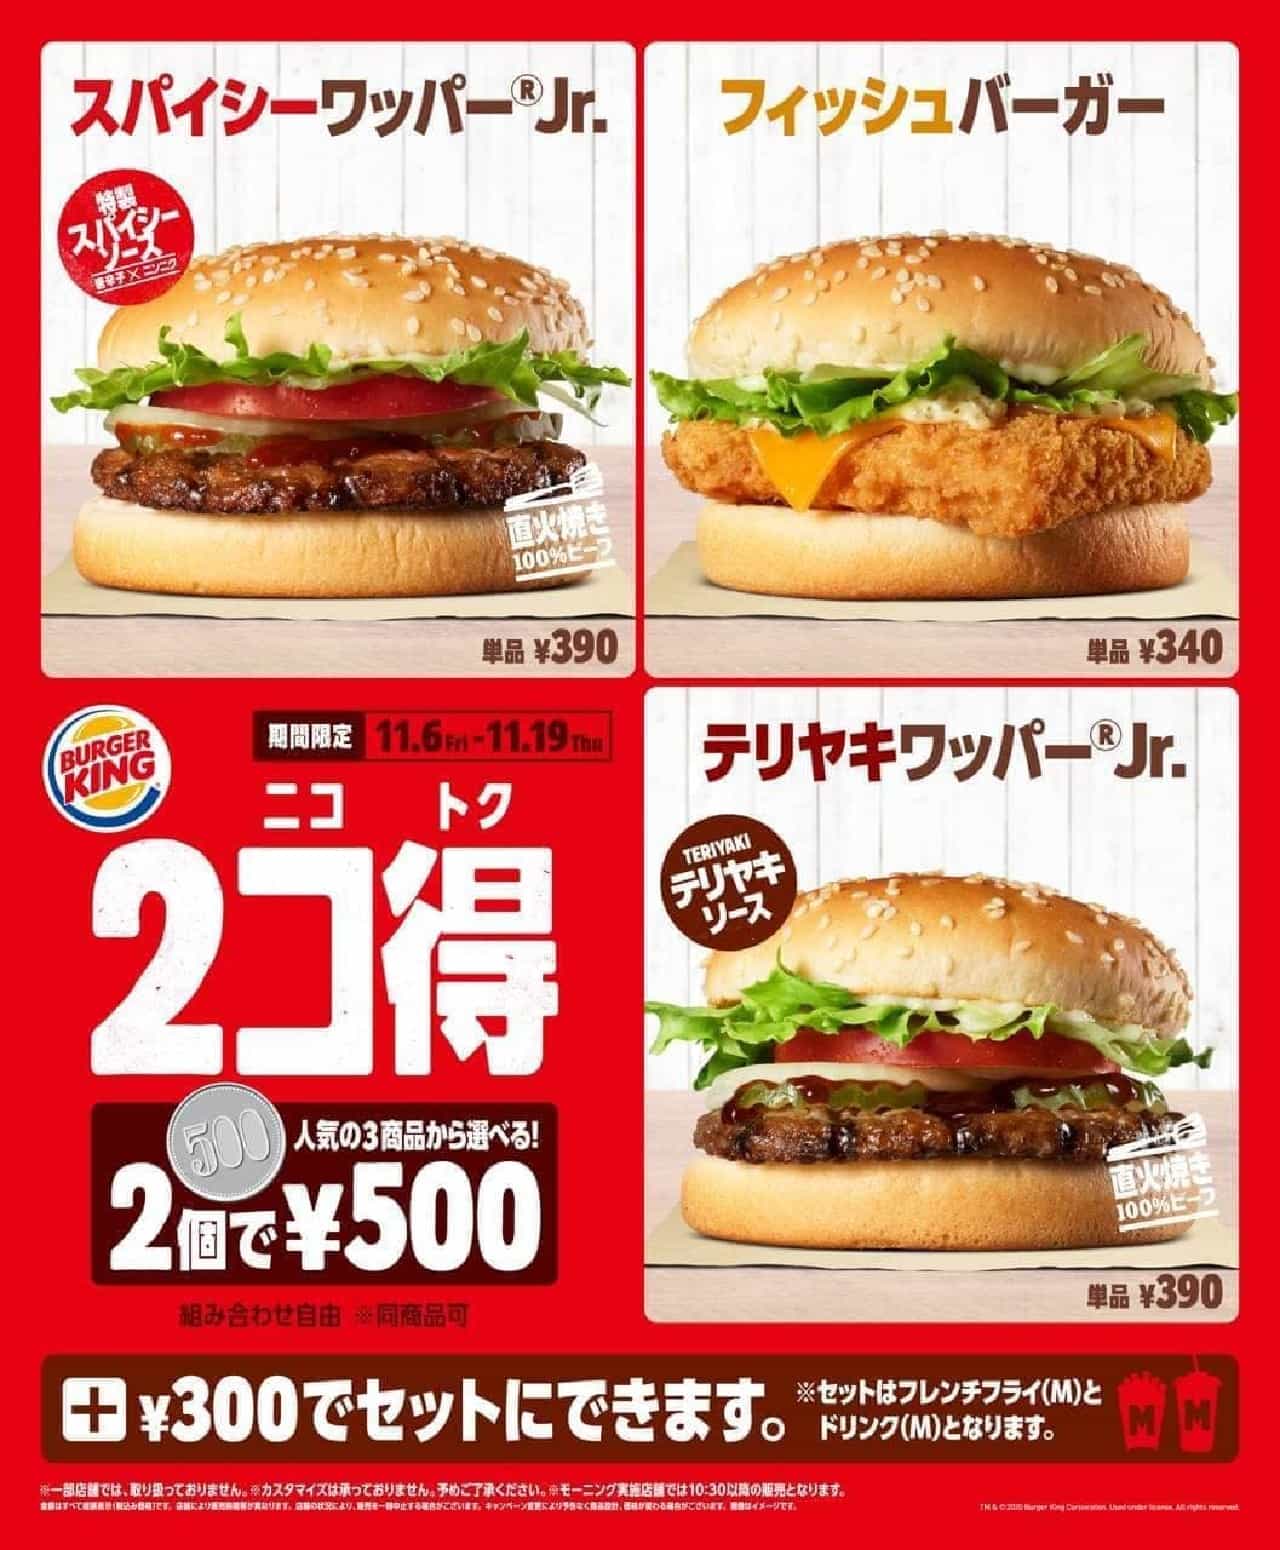 バーガーキングで 2コ得 ニコトク キャンペーン 選べるバーガー2個が500円 えん食べ